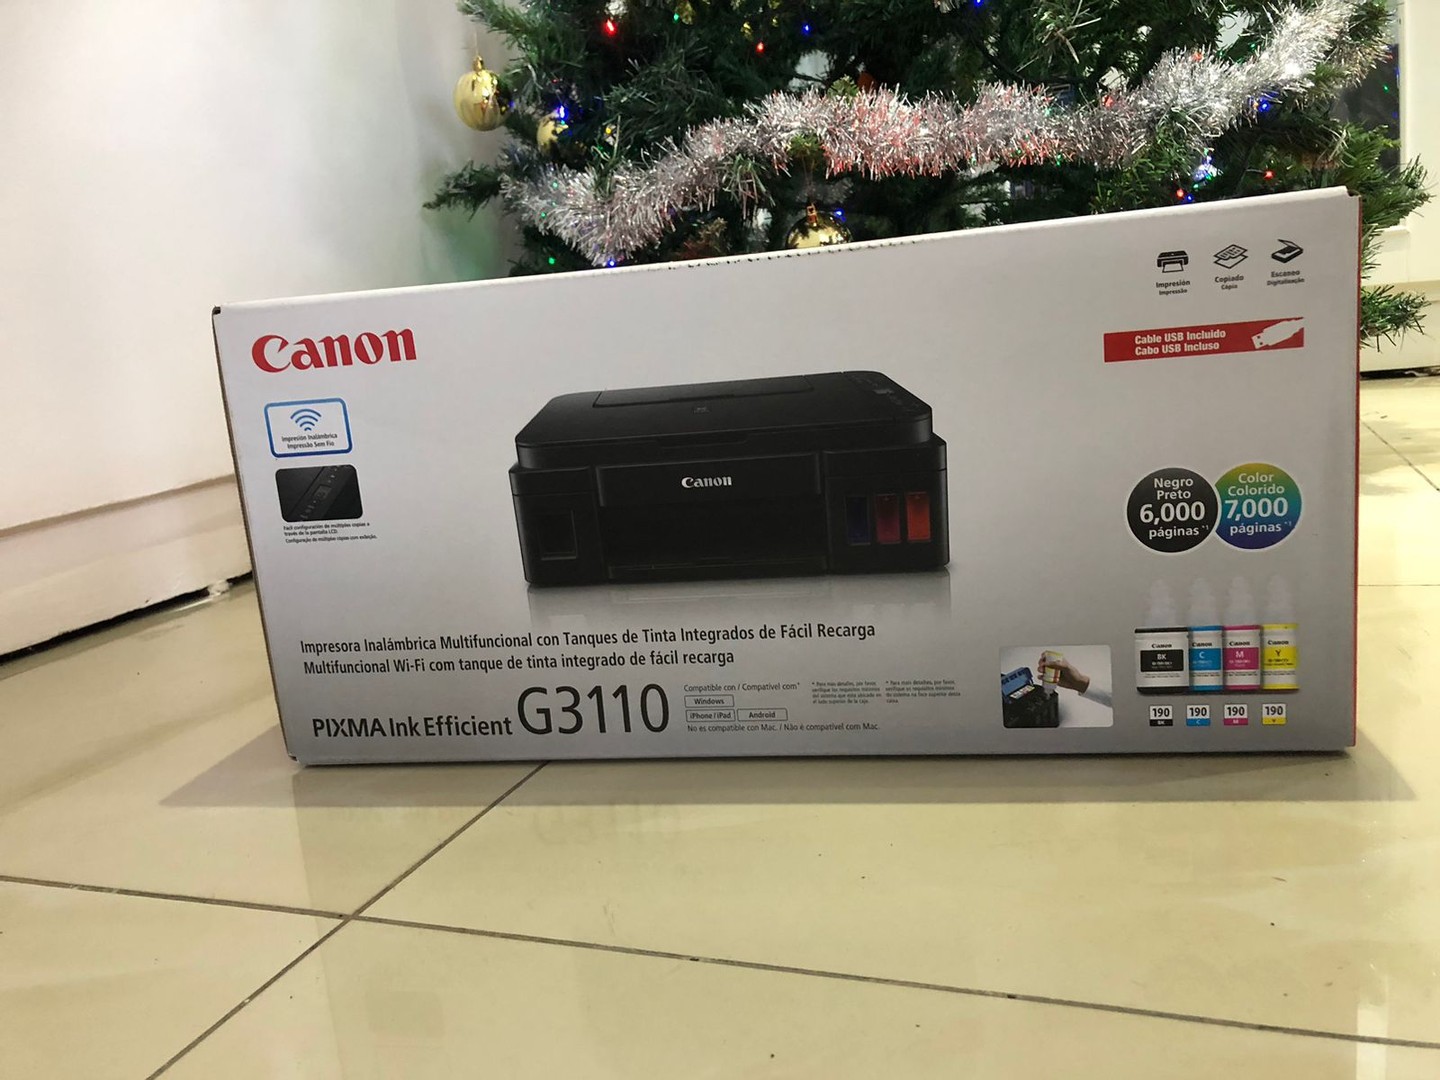 impresoras y scanners - Impresora Canon G3110 Multifuncional a Wifi Nueva y Sellada, Factura y Garantia 1